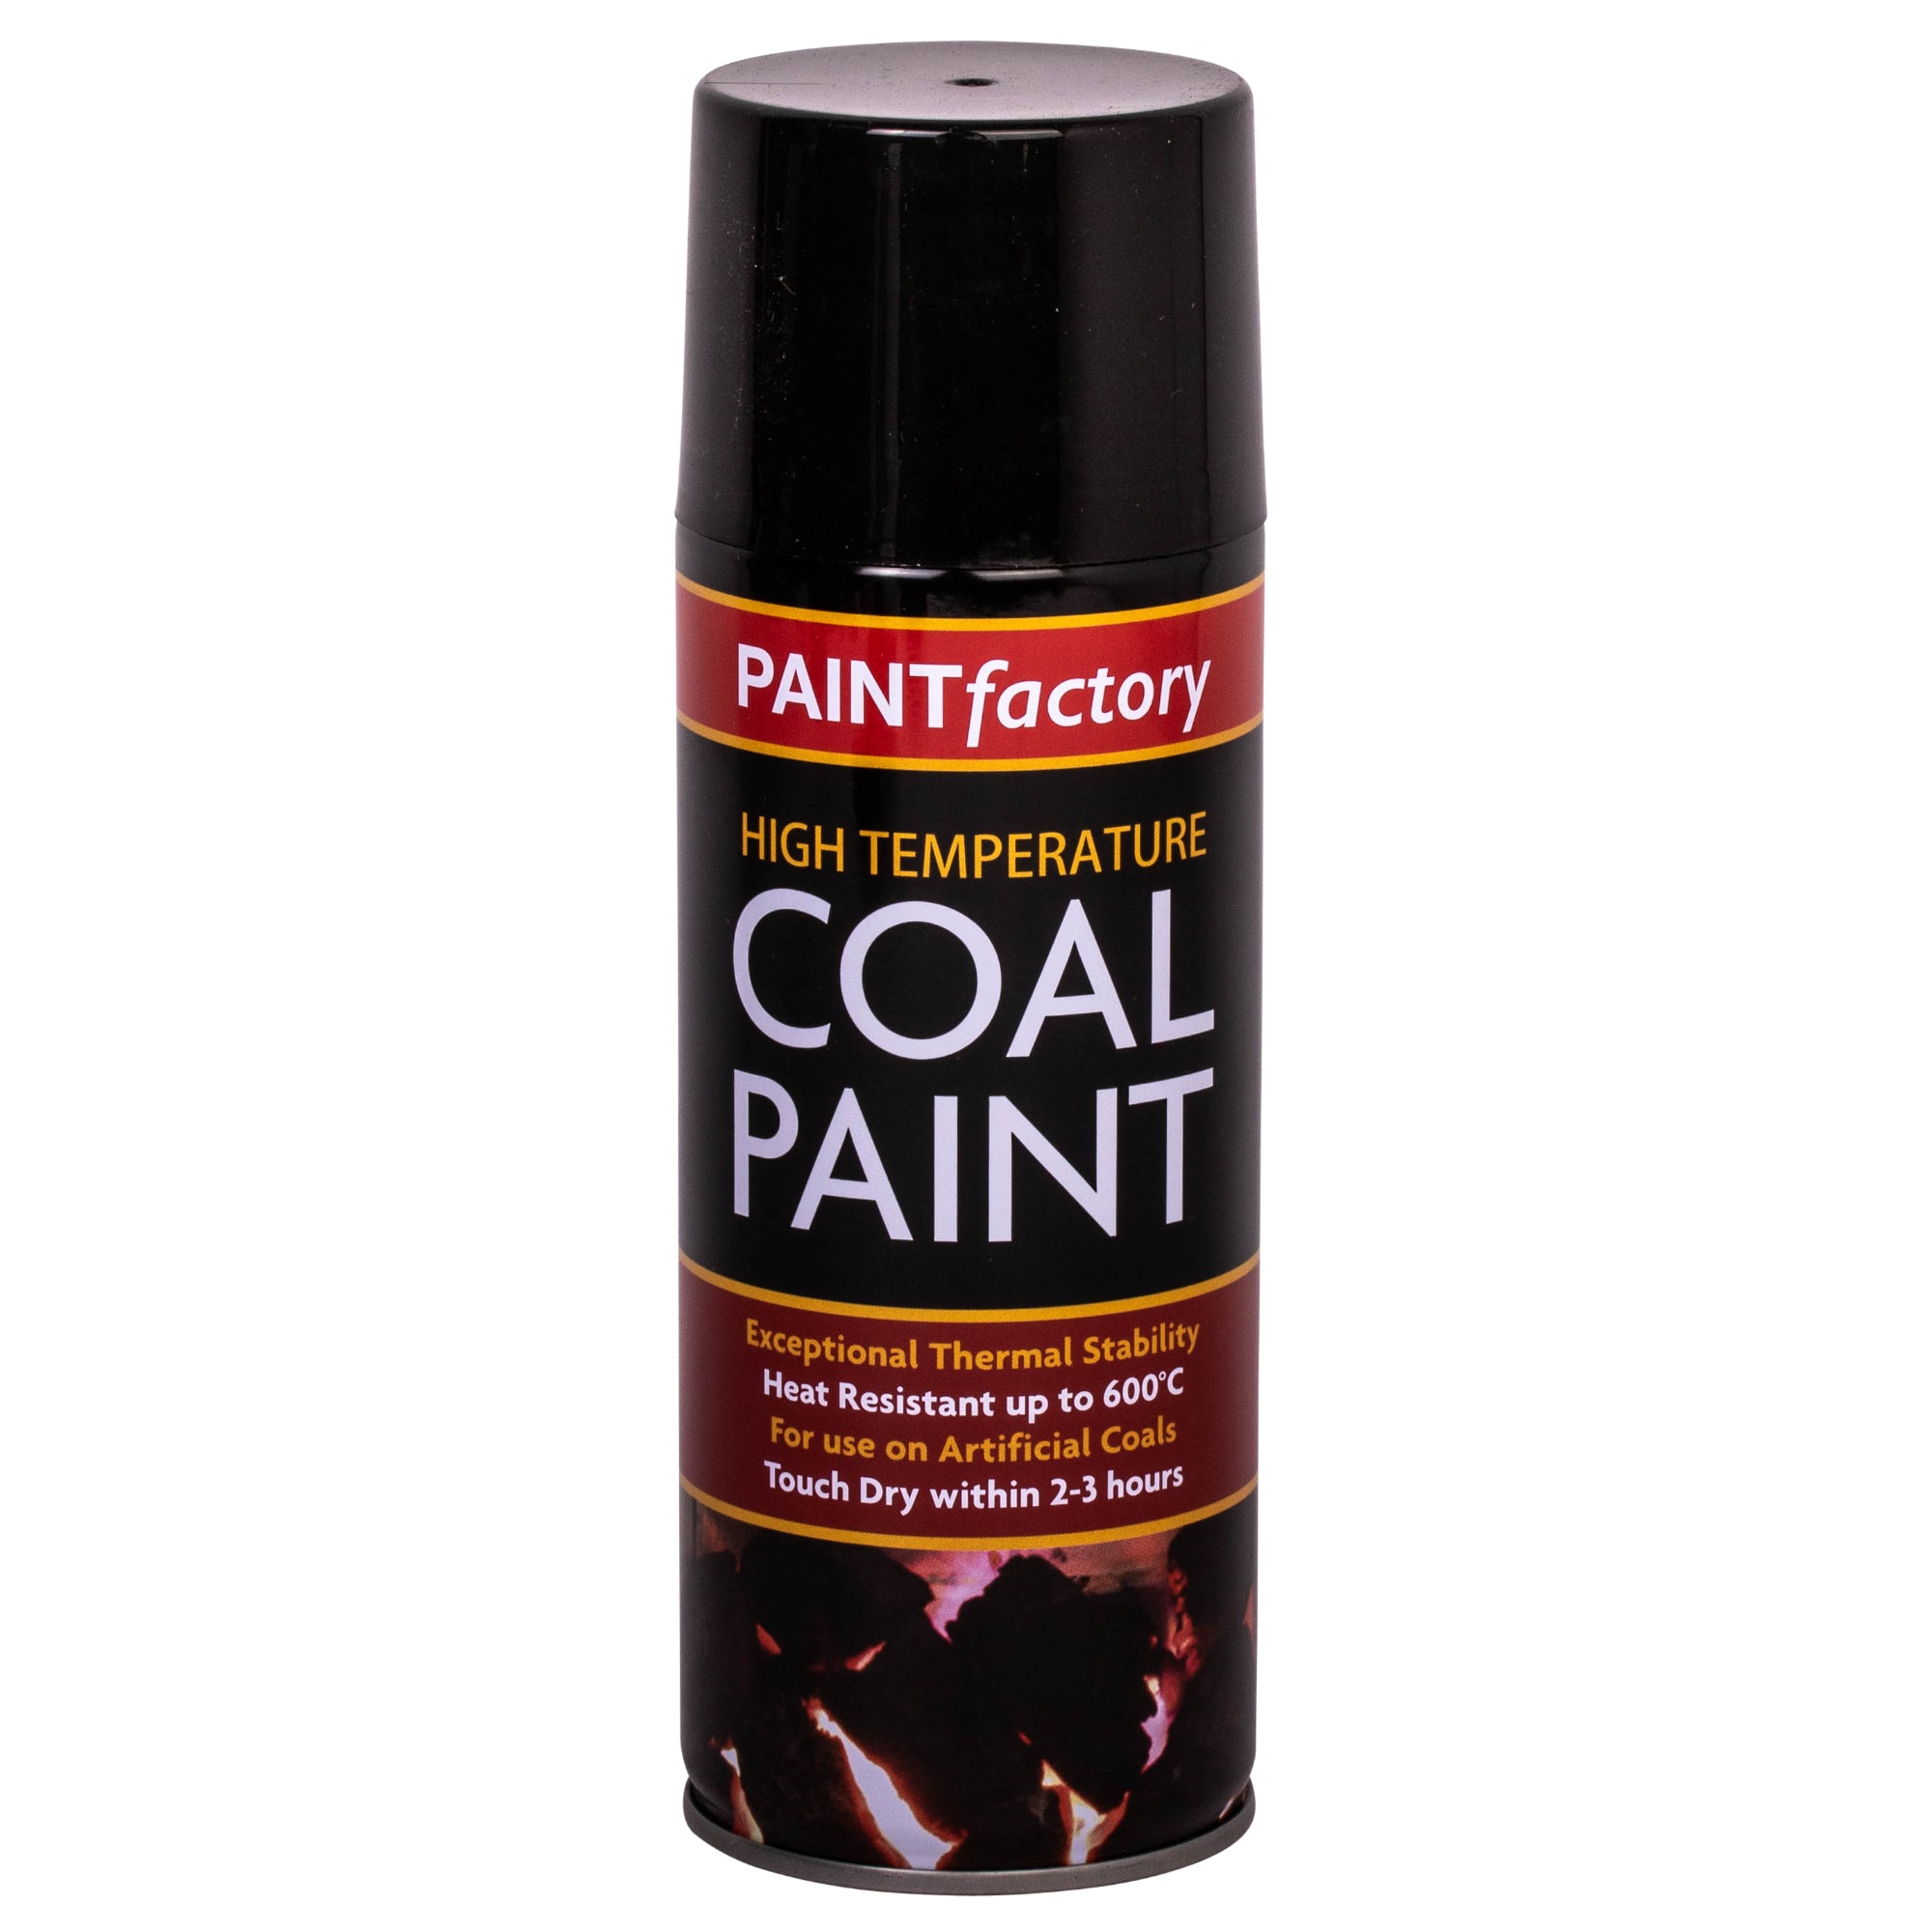 Paintfactory Coal Paint Black 400ml